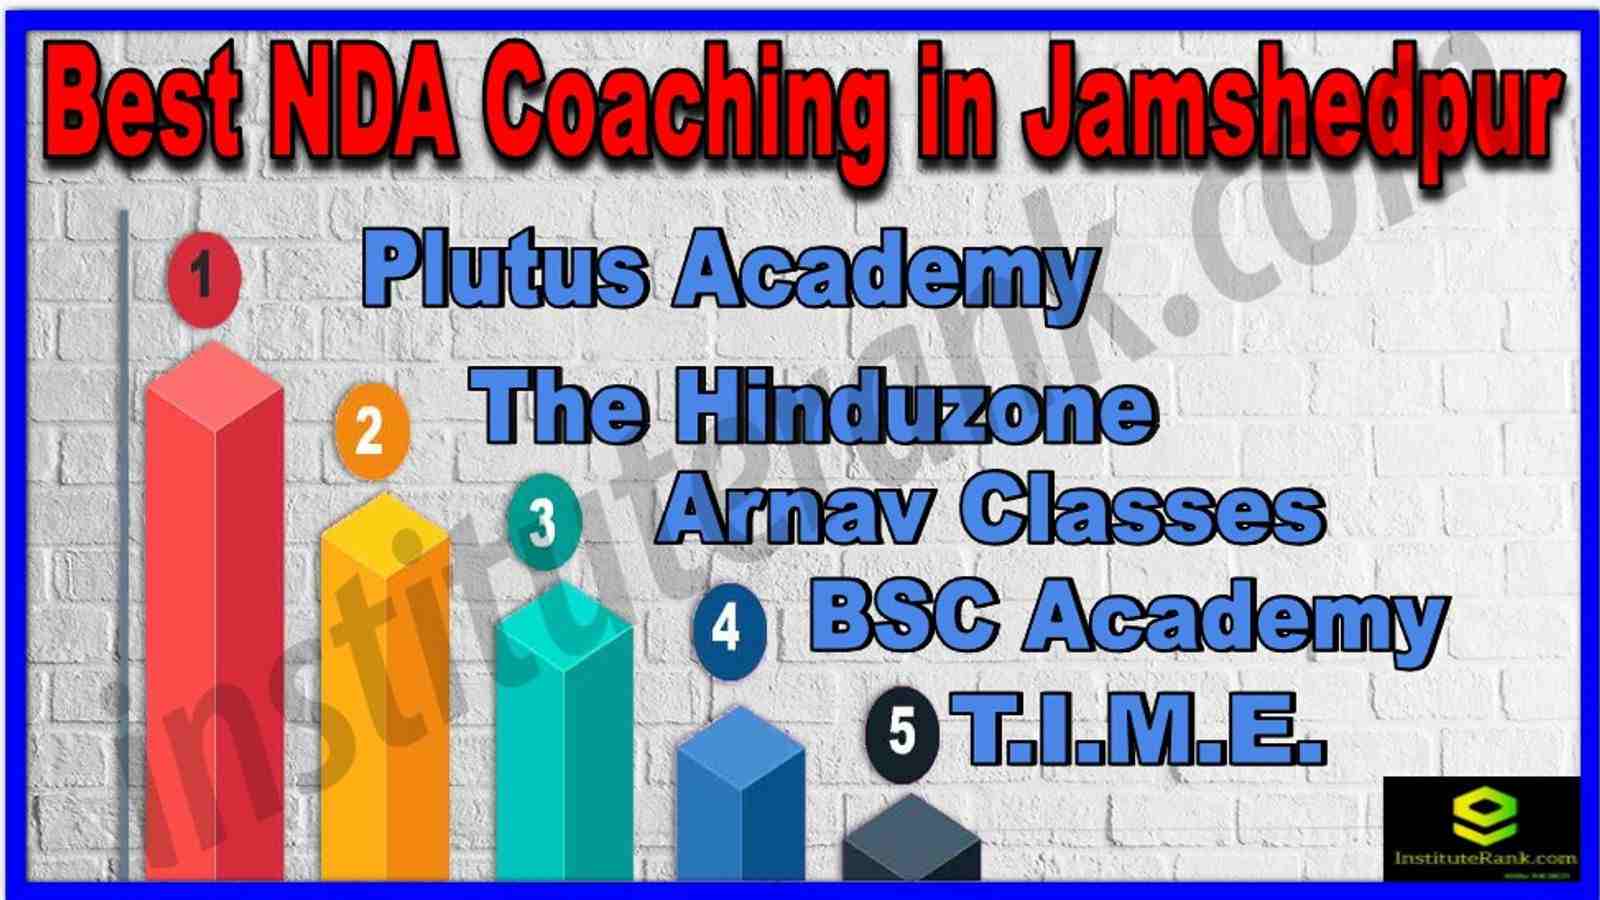 Best NDA Coaching in Jamshedpur